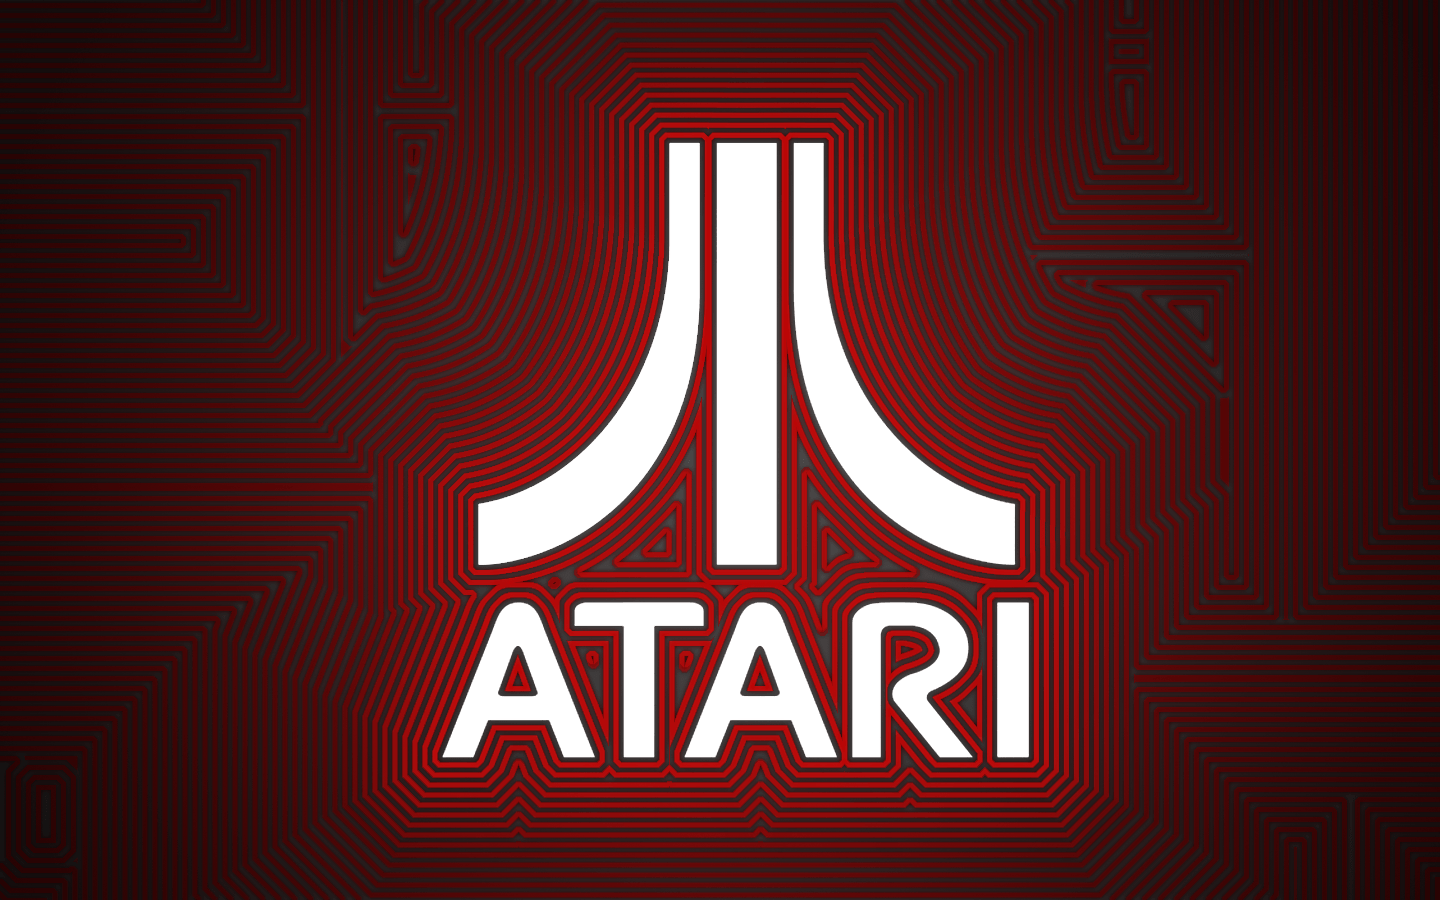 Update: Atari Tribute Wallpaper. Andrew M. Pace